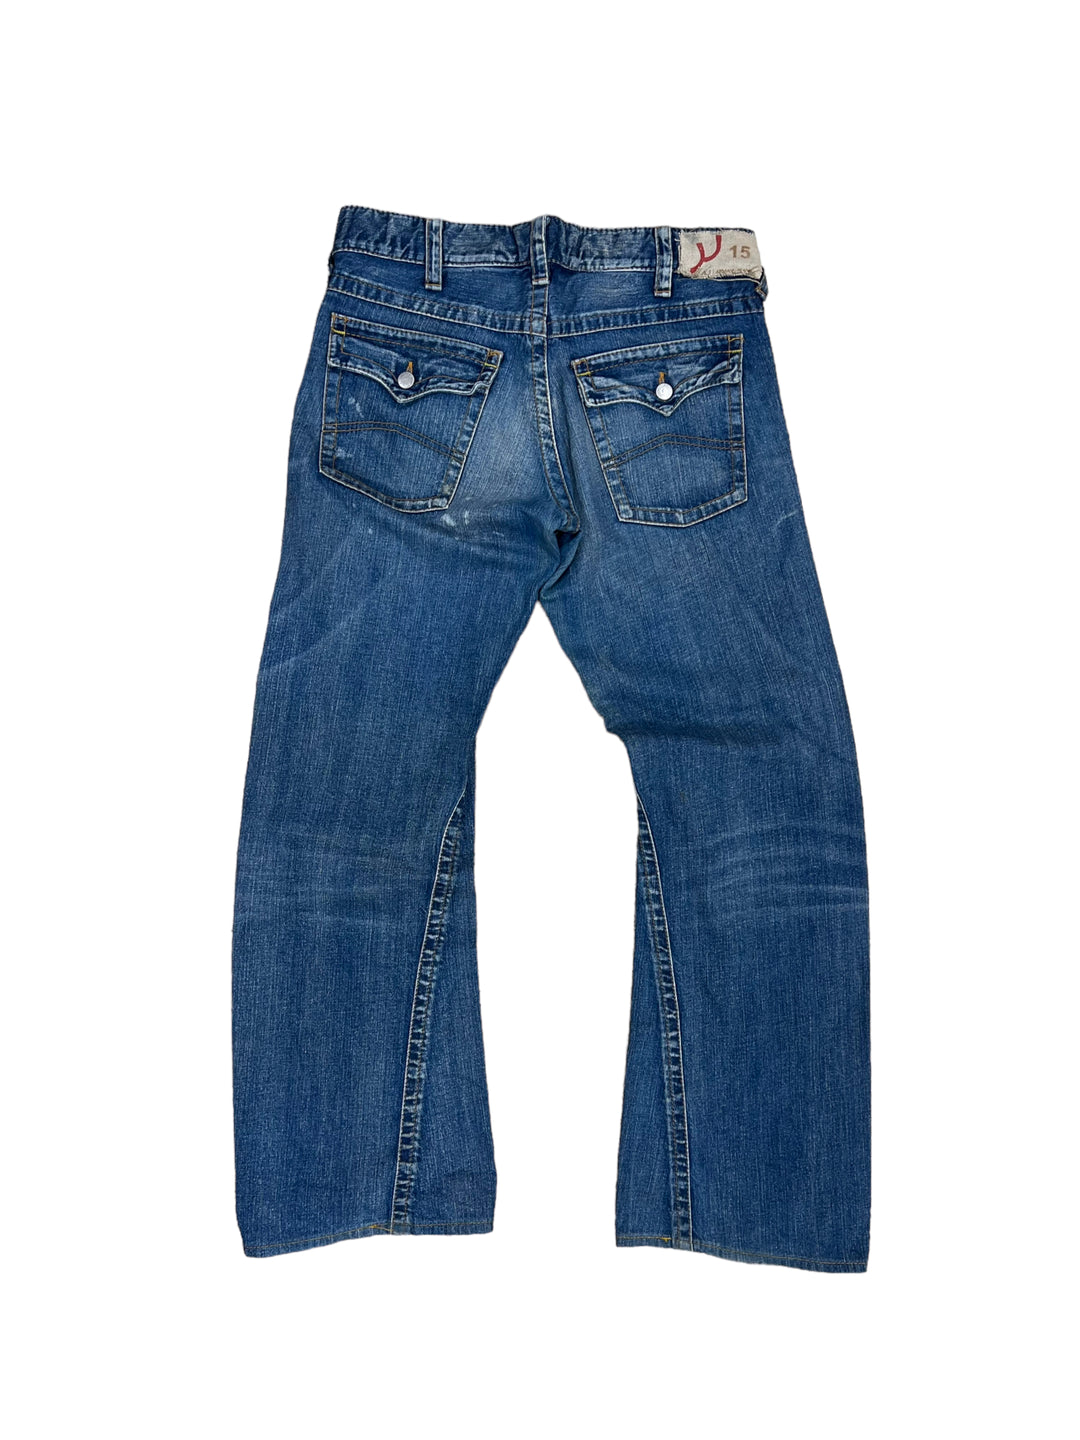 Armani y2k low waist jeans Men’s M/L (34)